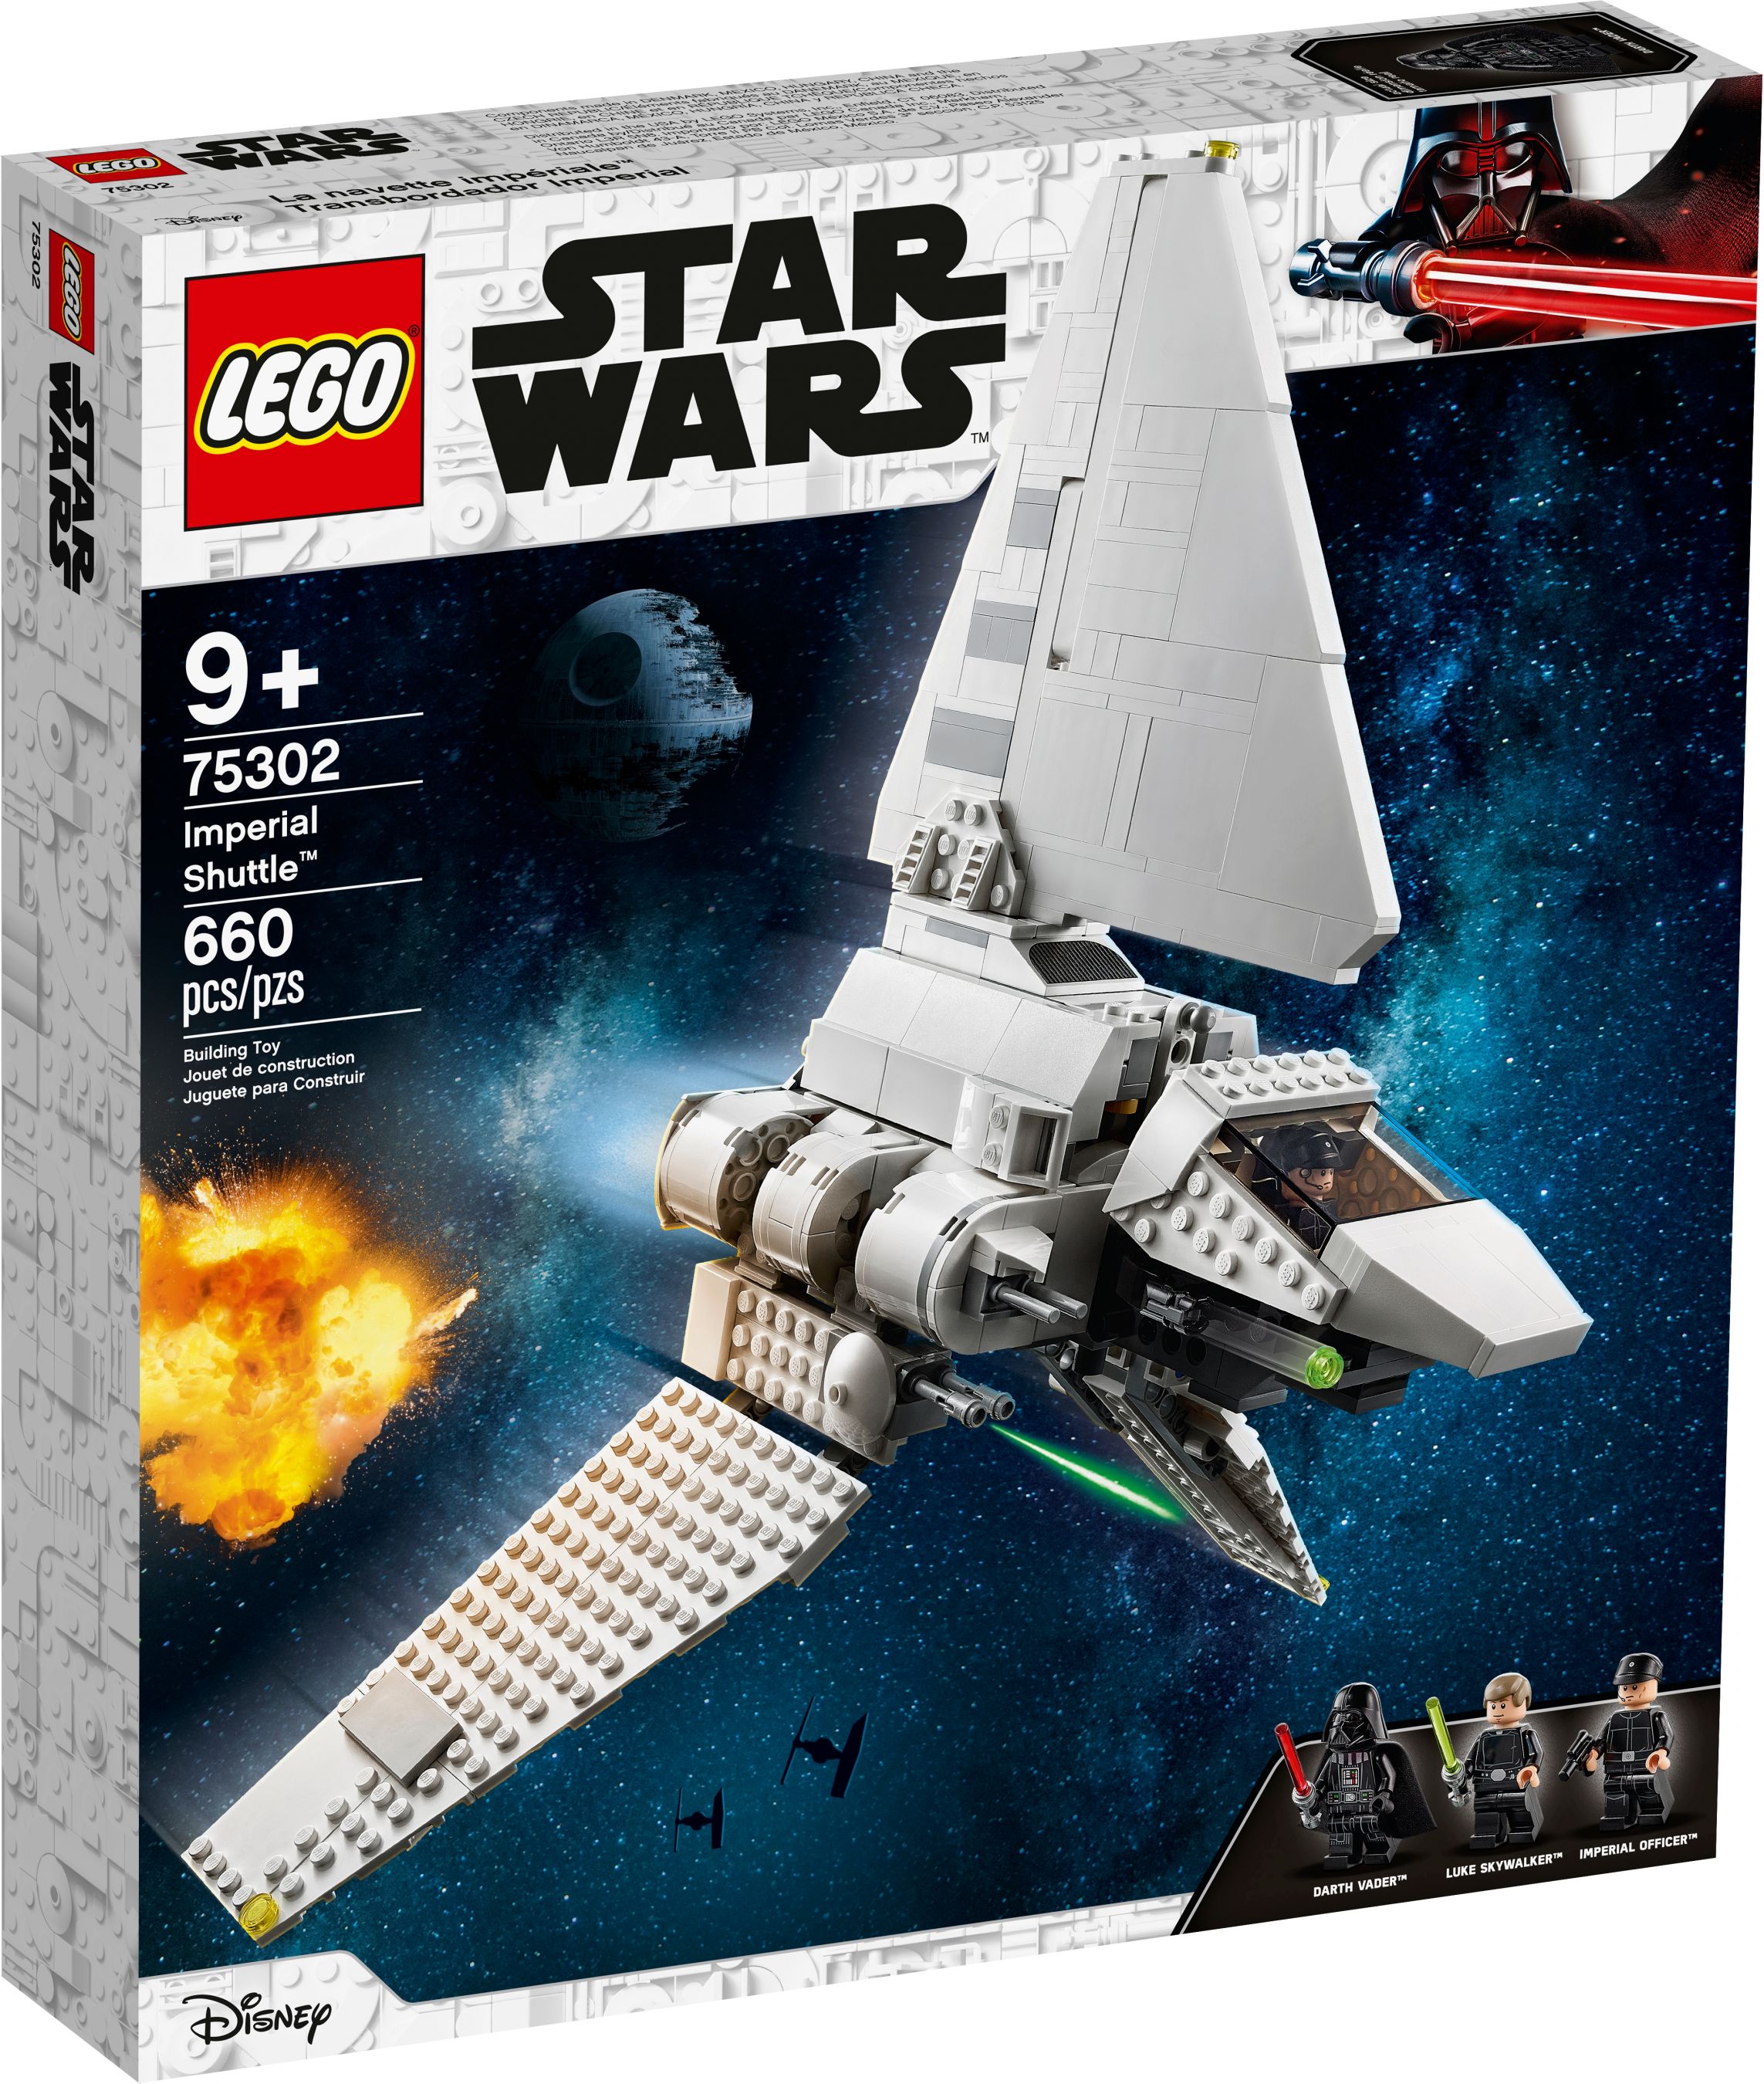 LEGO Star Wars 75302 Imperial Shuttle™ LEGO_75302_box1_v39.jpg